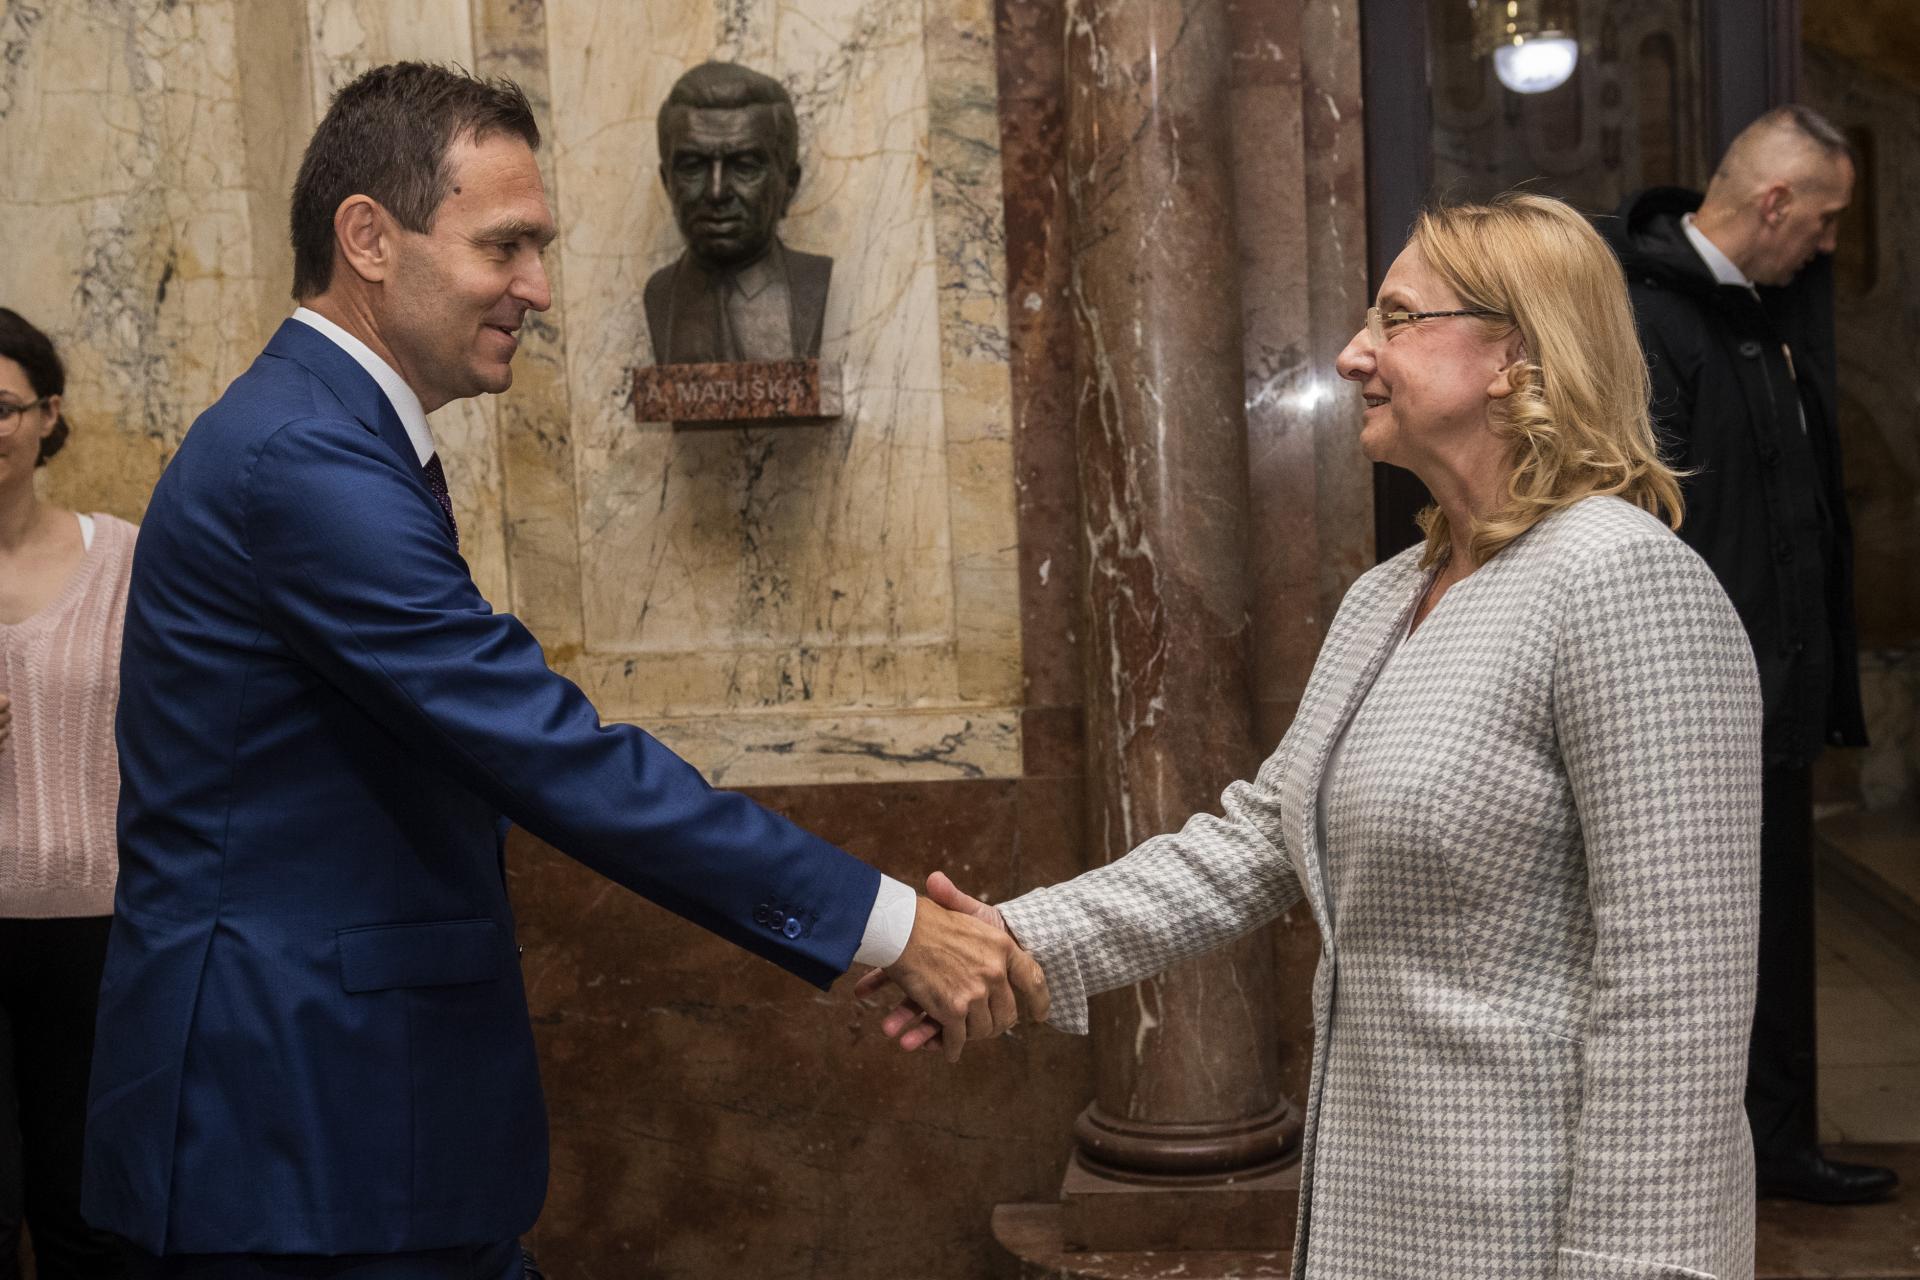 Postavenie kultúry i jej vnímanie by sa malo posilniť, tvrdí nová ministerka kultúry Silvia Hroncová